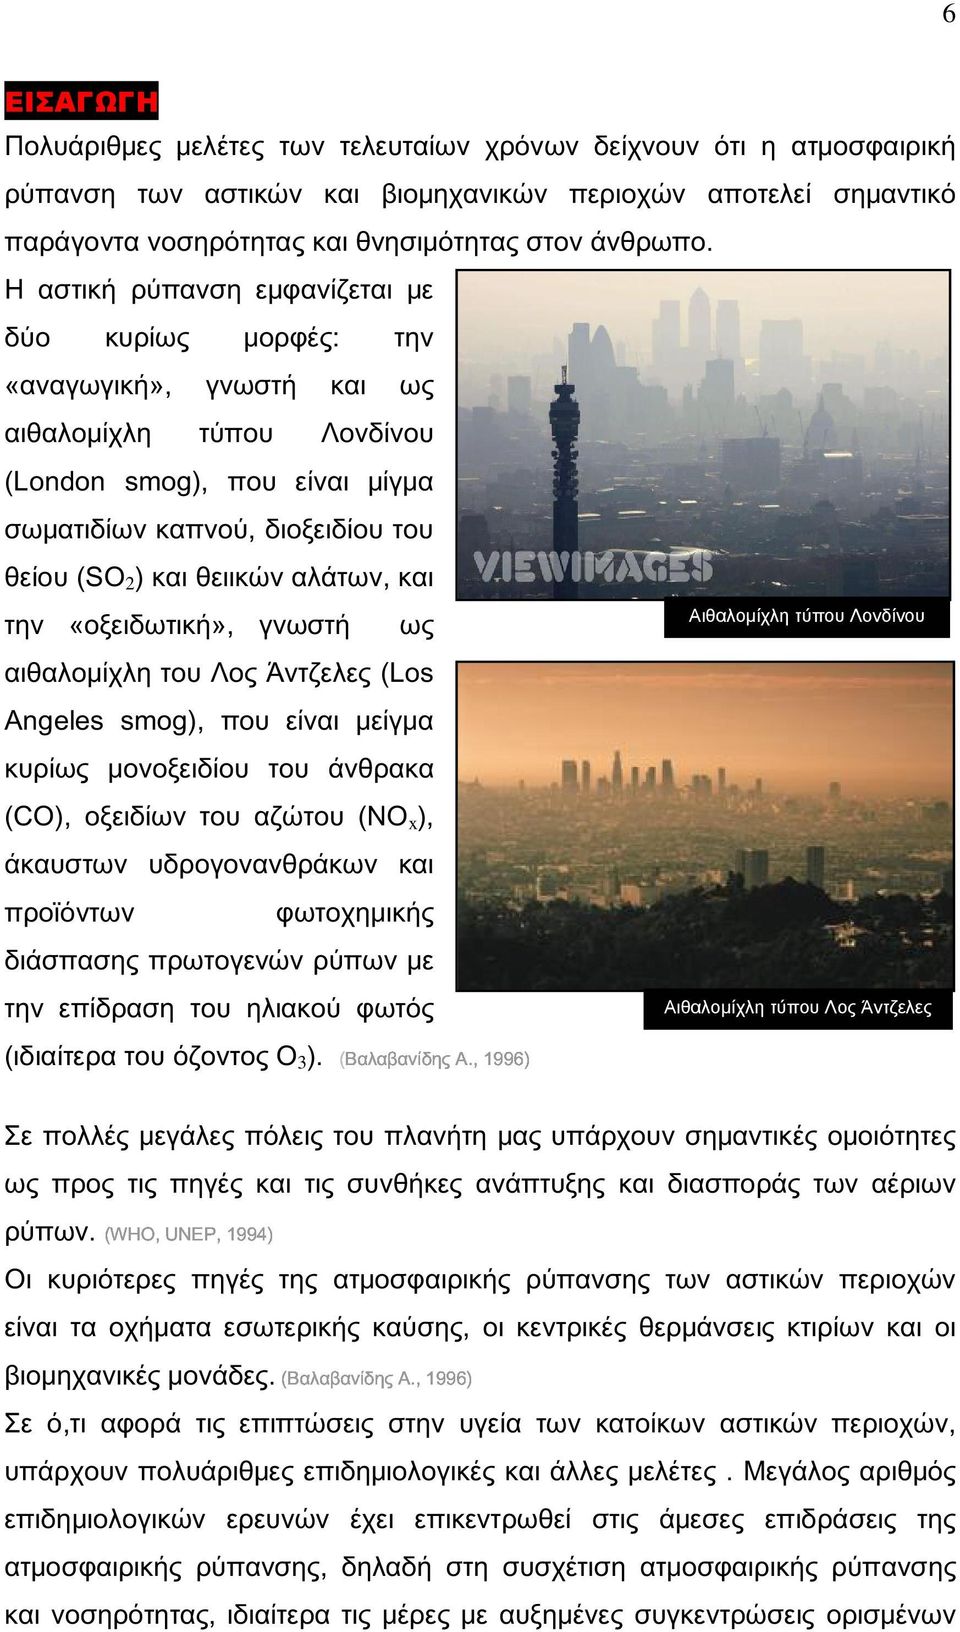 αλάτων, και την «οξειδωτική», γνωστή ως αιθαλομίχλη του Λος Άντζελες (Los Angeles smog), που είναι μείγμα κυρίως μονοξειδίου του άνθρακα Αιθαλοµίχλη τύπου Λονδίνου (CO), οξειδίων του αζώτου (NO x ),